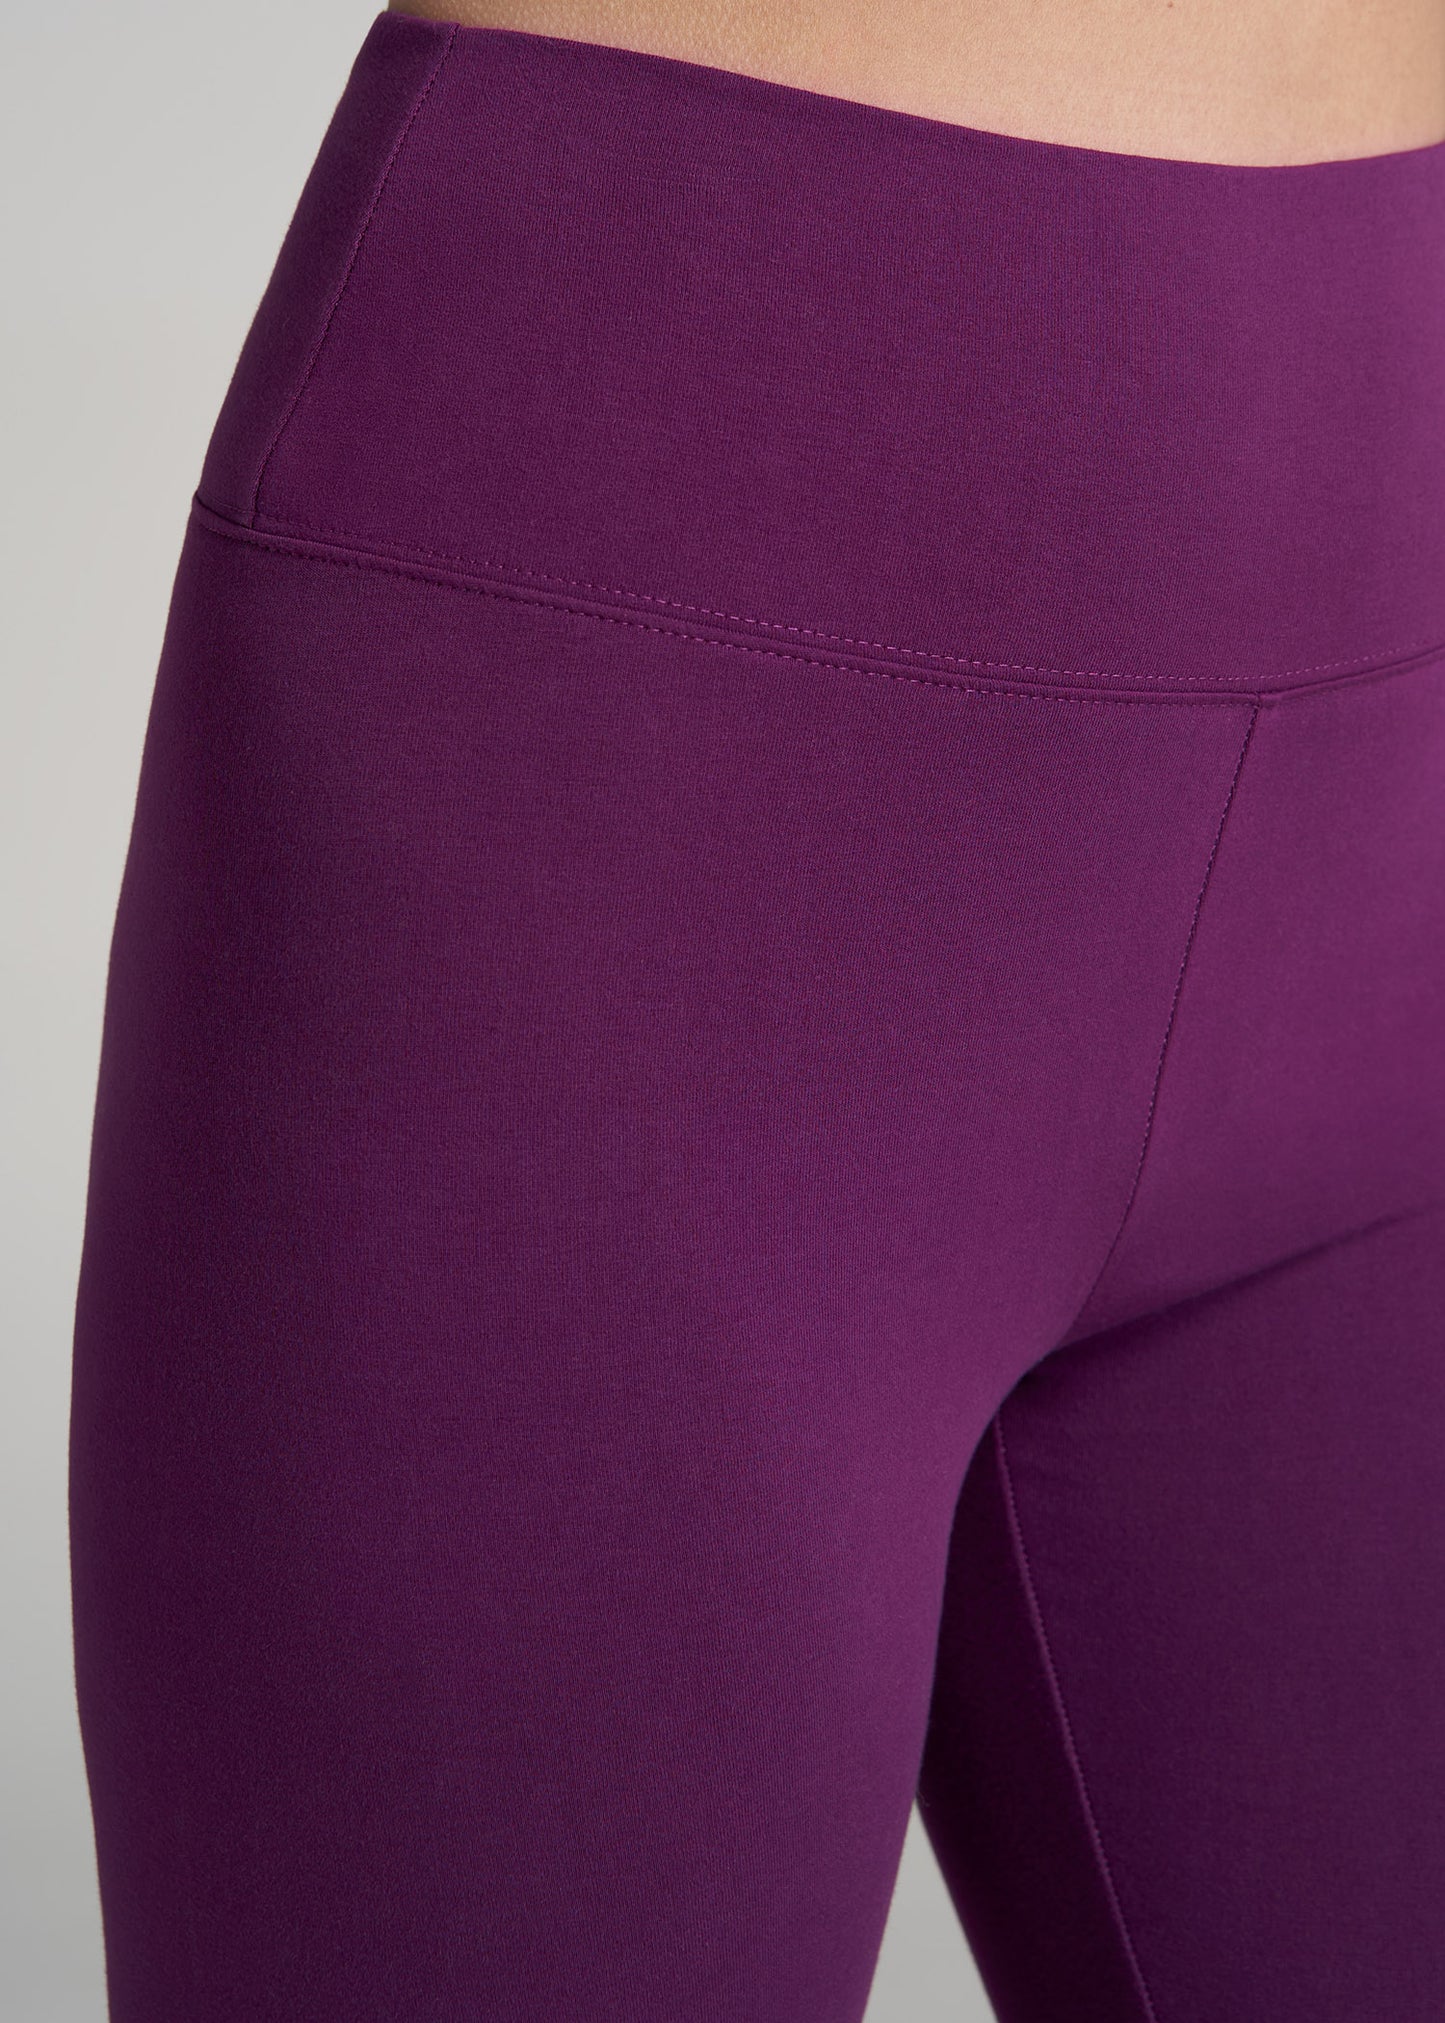 Athleta cropped leggings Purple Plum color Size Medium 